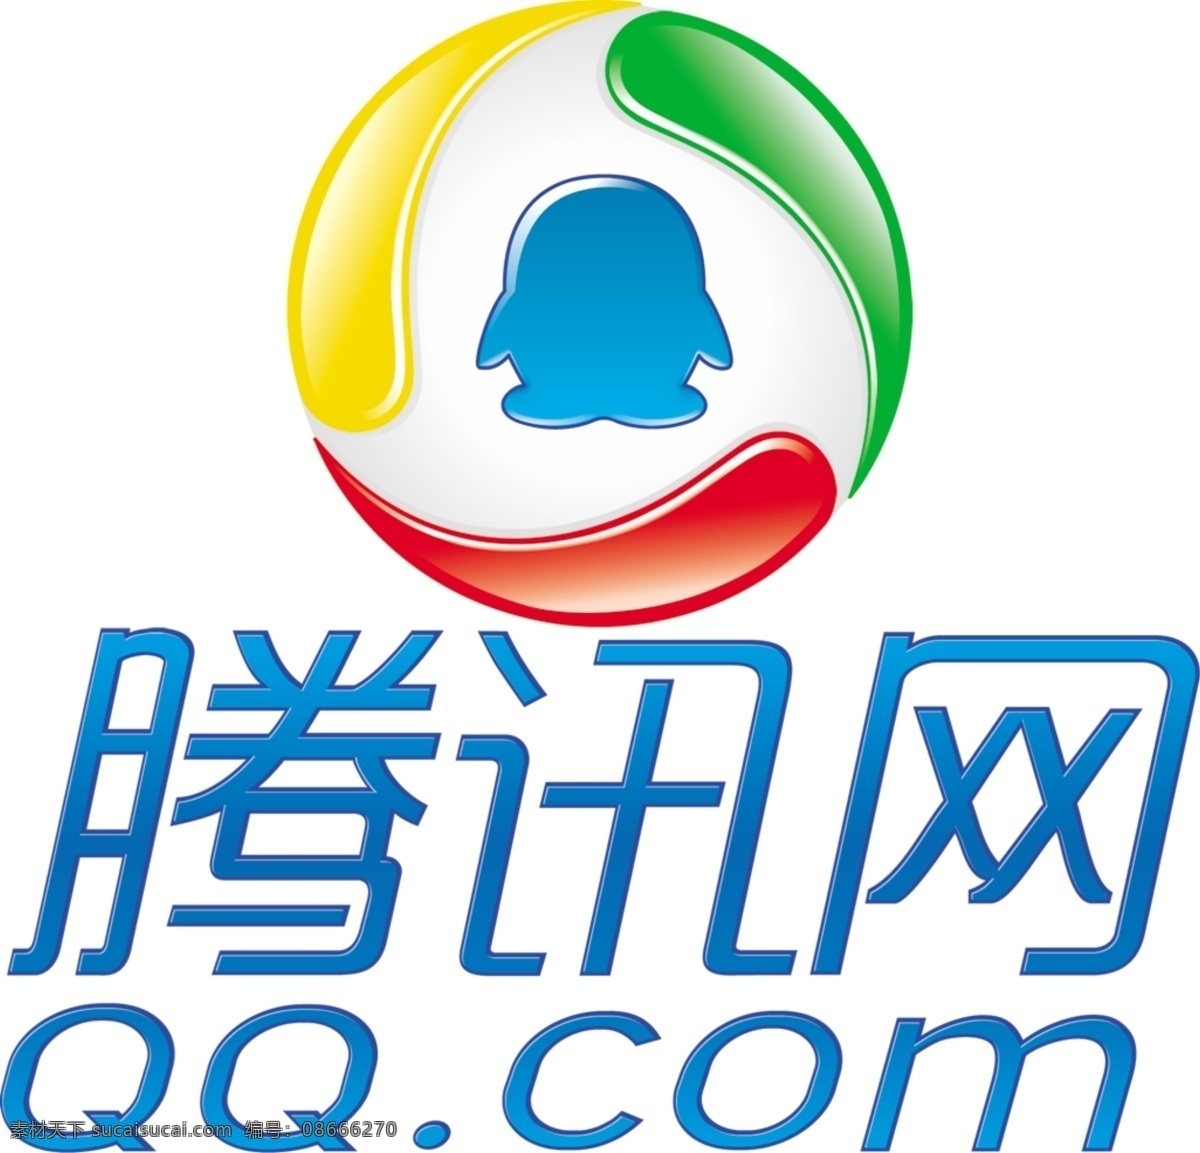 腾讯 网 logo 分层 qq 腾讯网 源文件库 qq素材下载 qq模板下载 psd源文件 文件 源文件